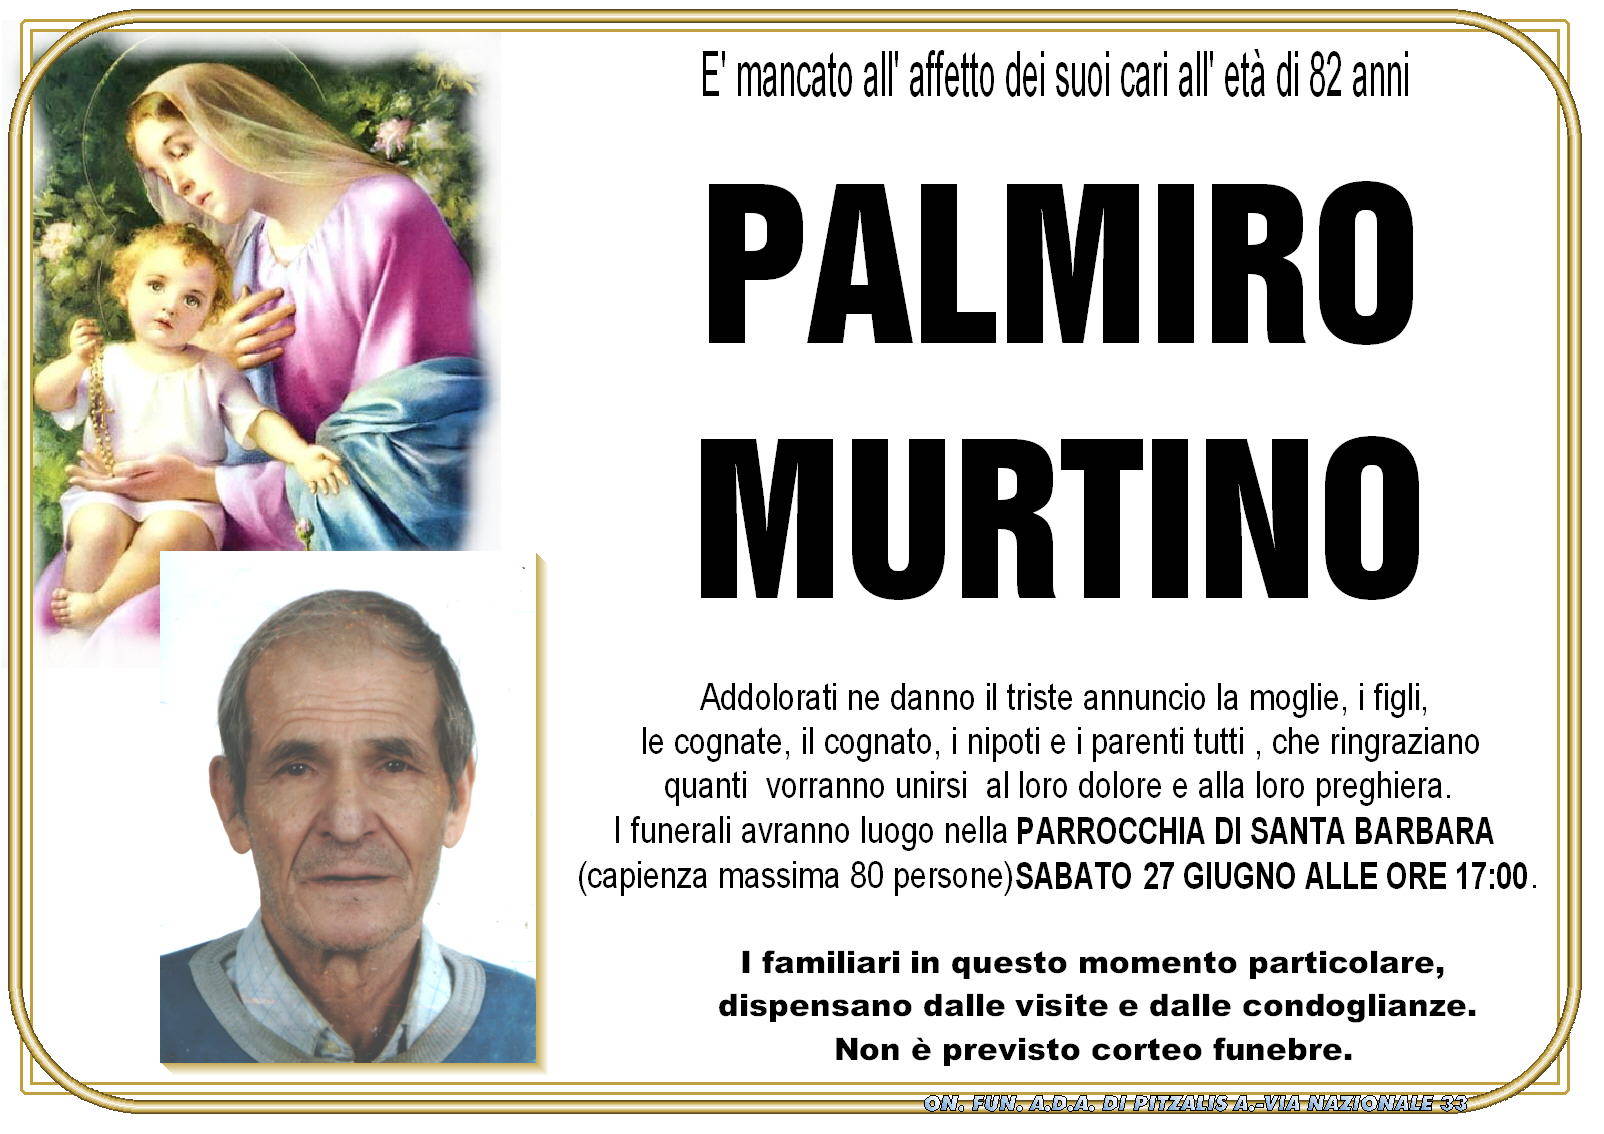 Palmiro Murtino